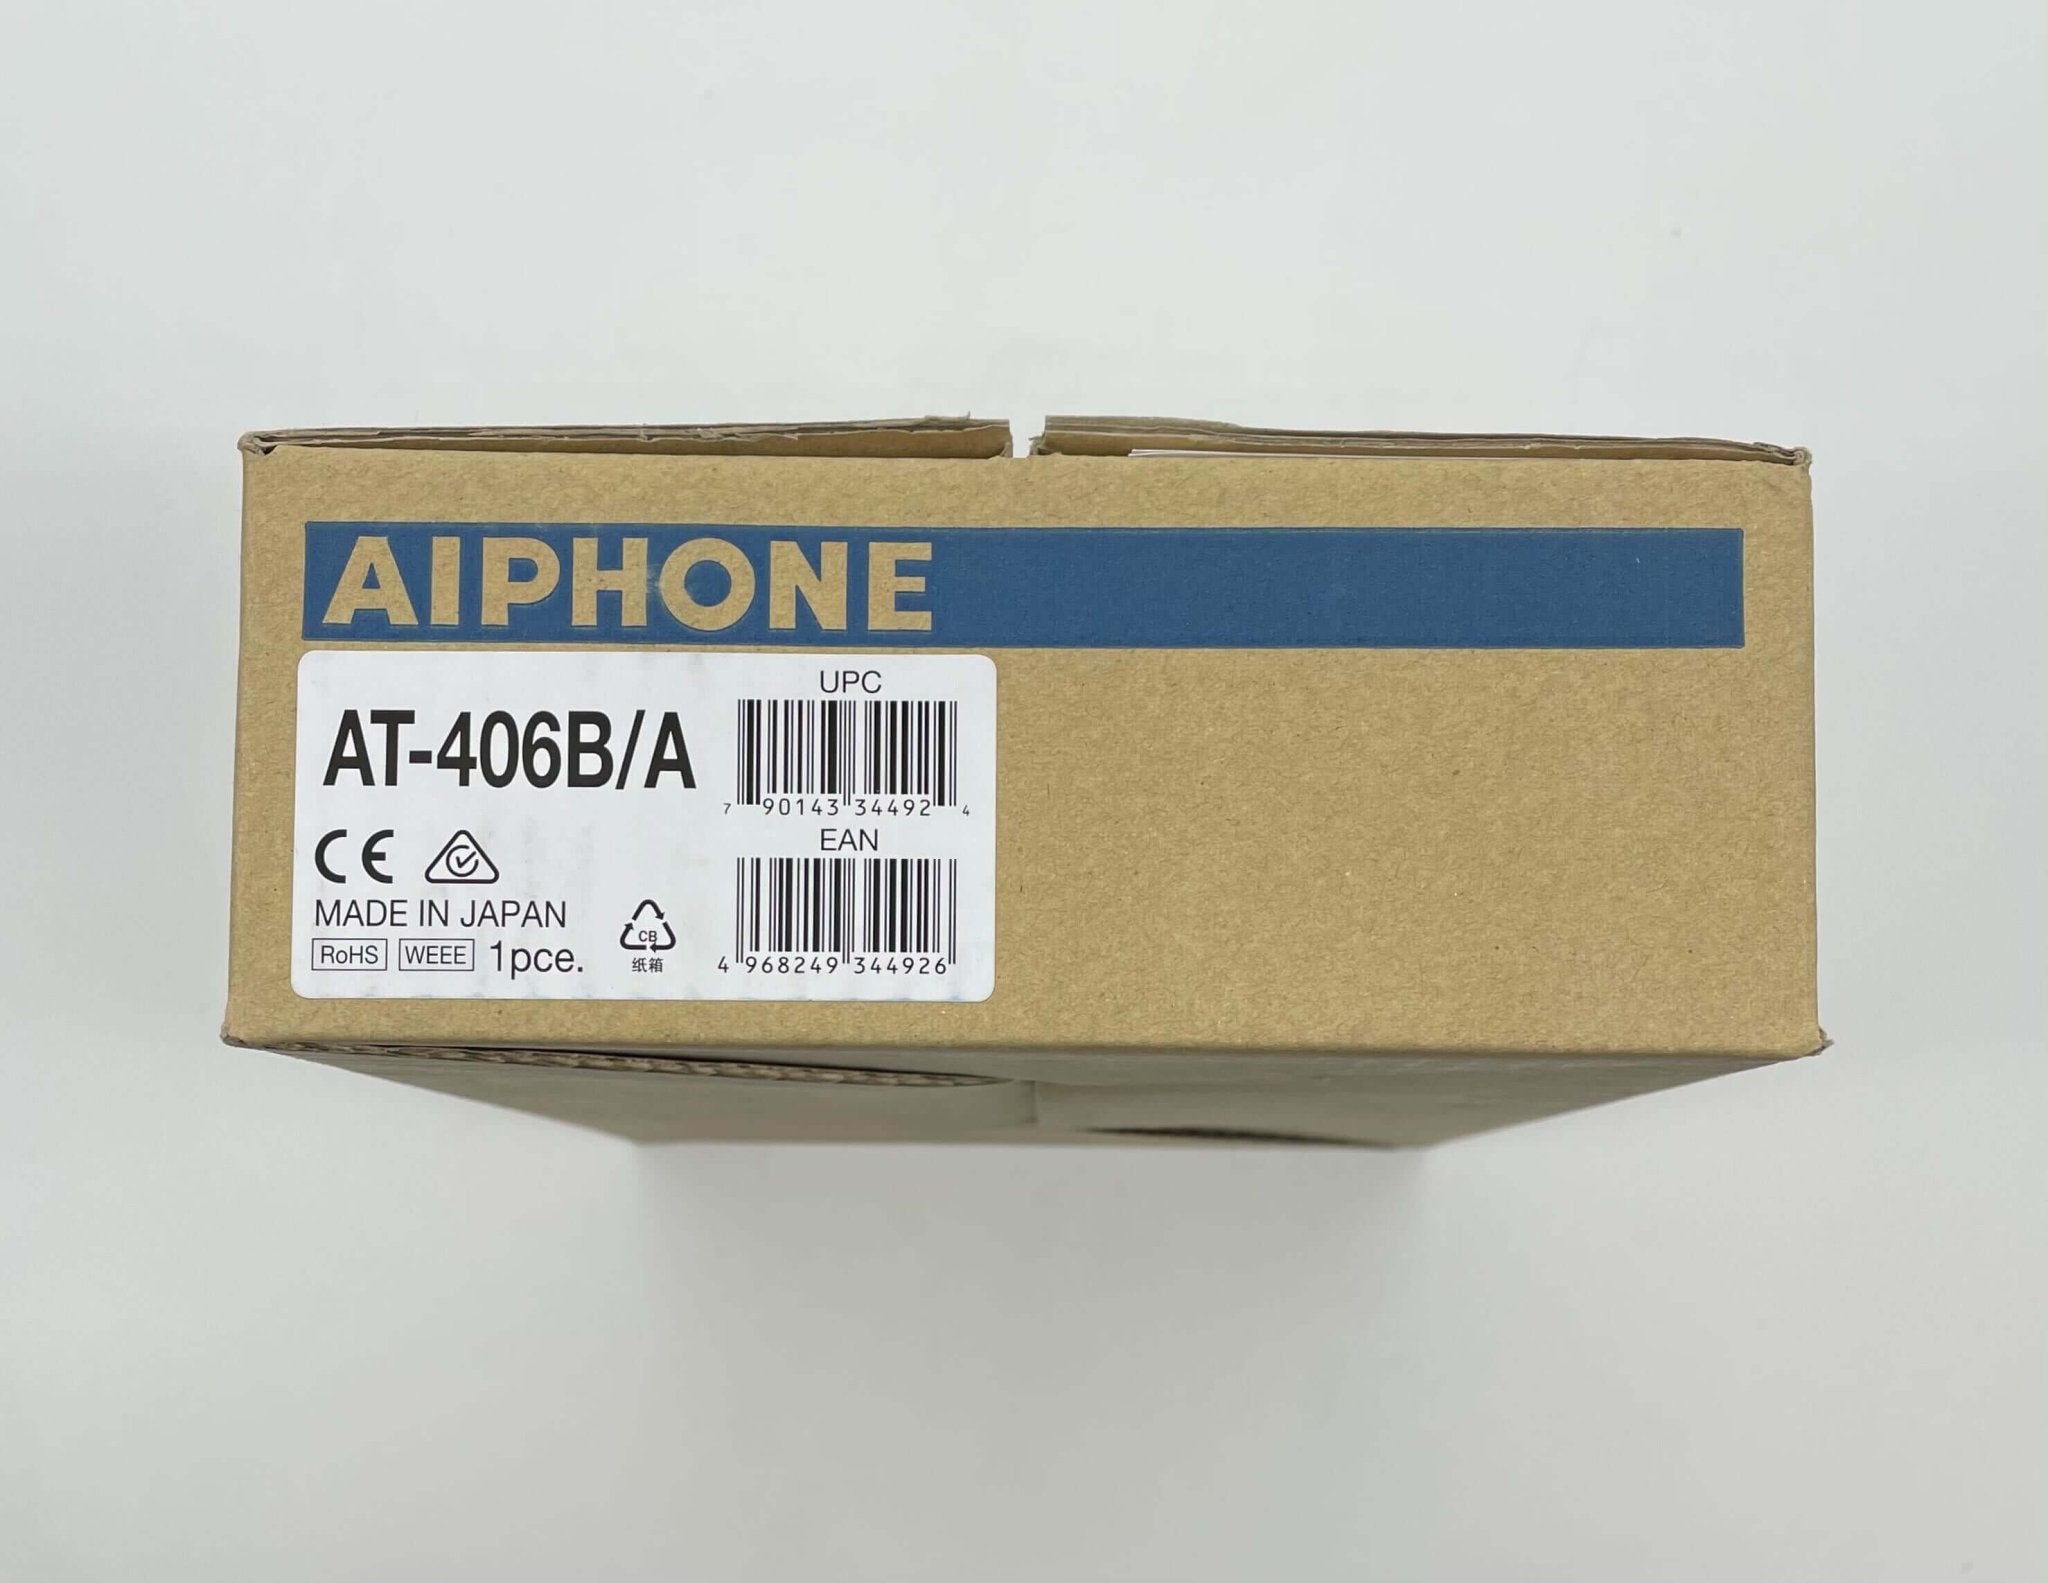 Aiphone AT-406B/A